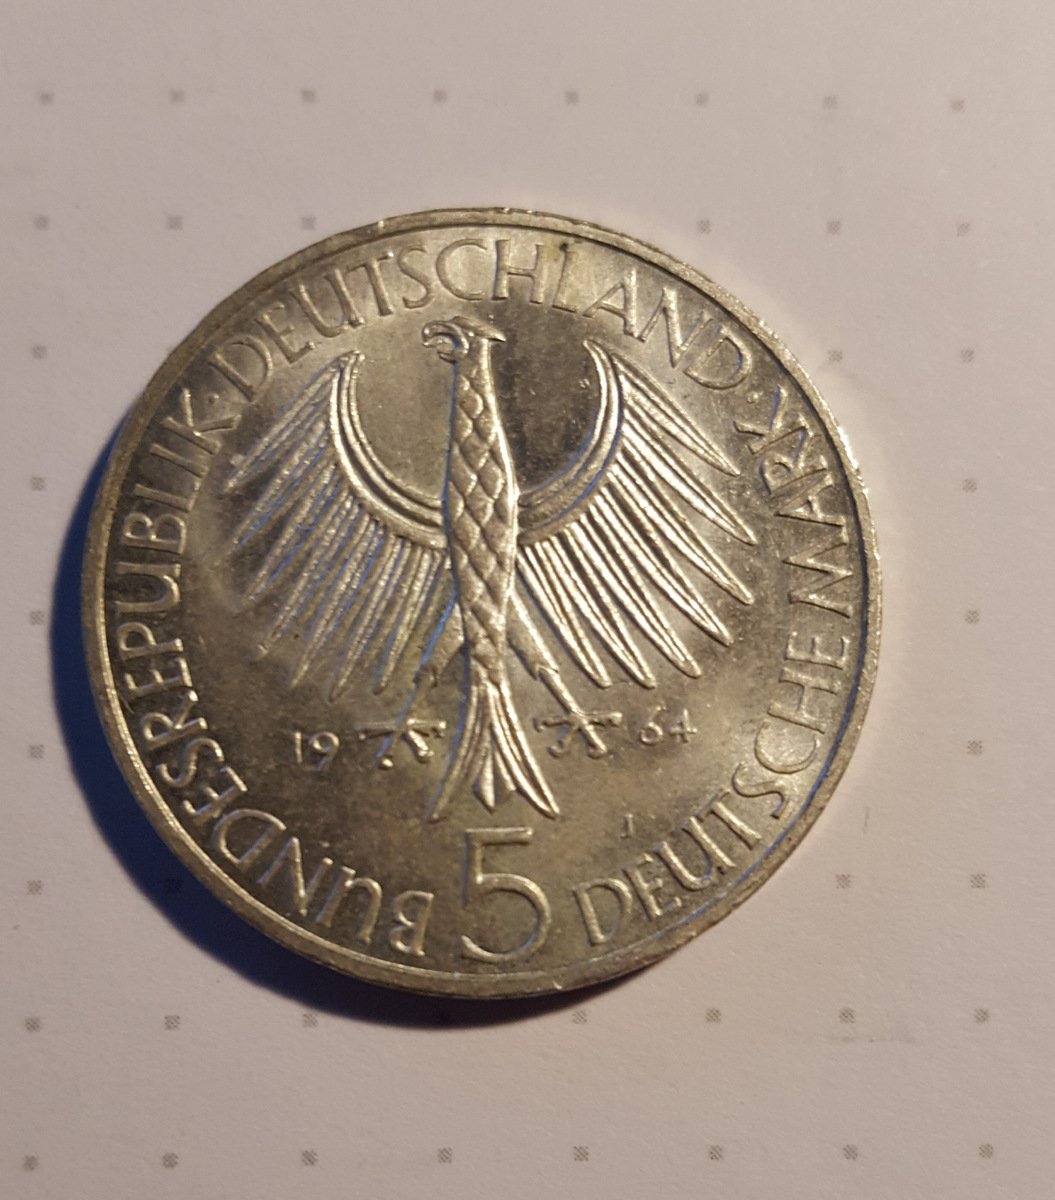  5 DM Silber Deutschland 1964 J , Johann Gottlieb Fichte   